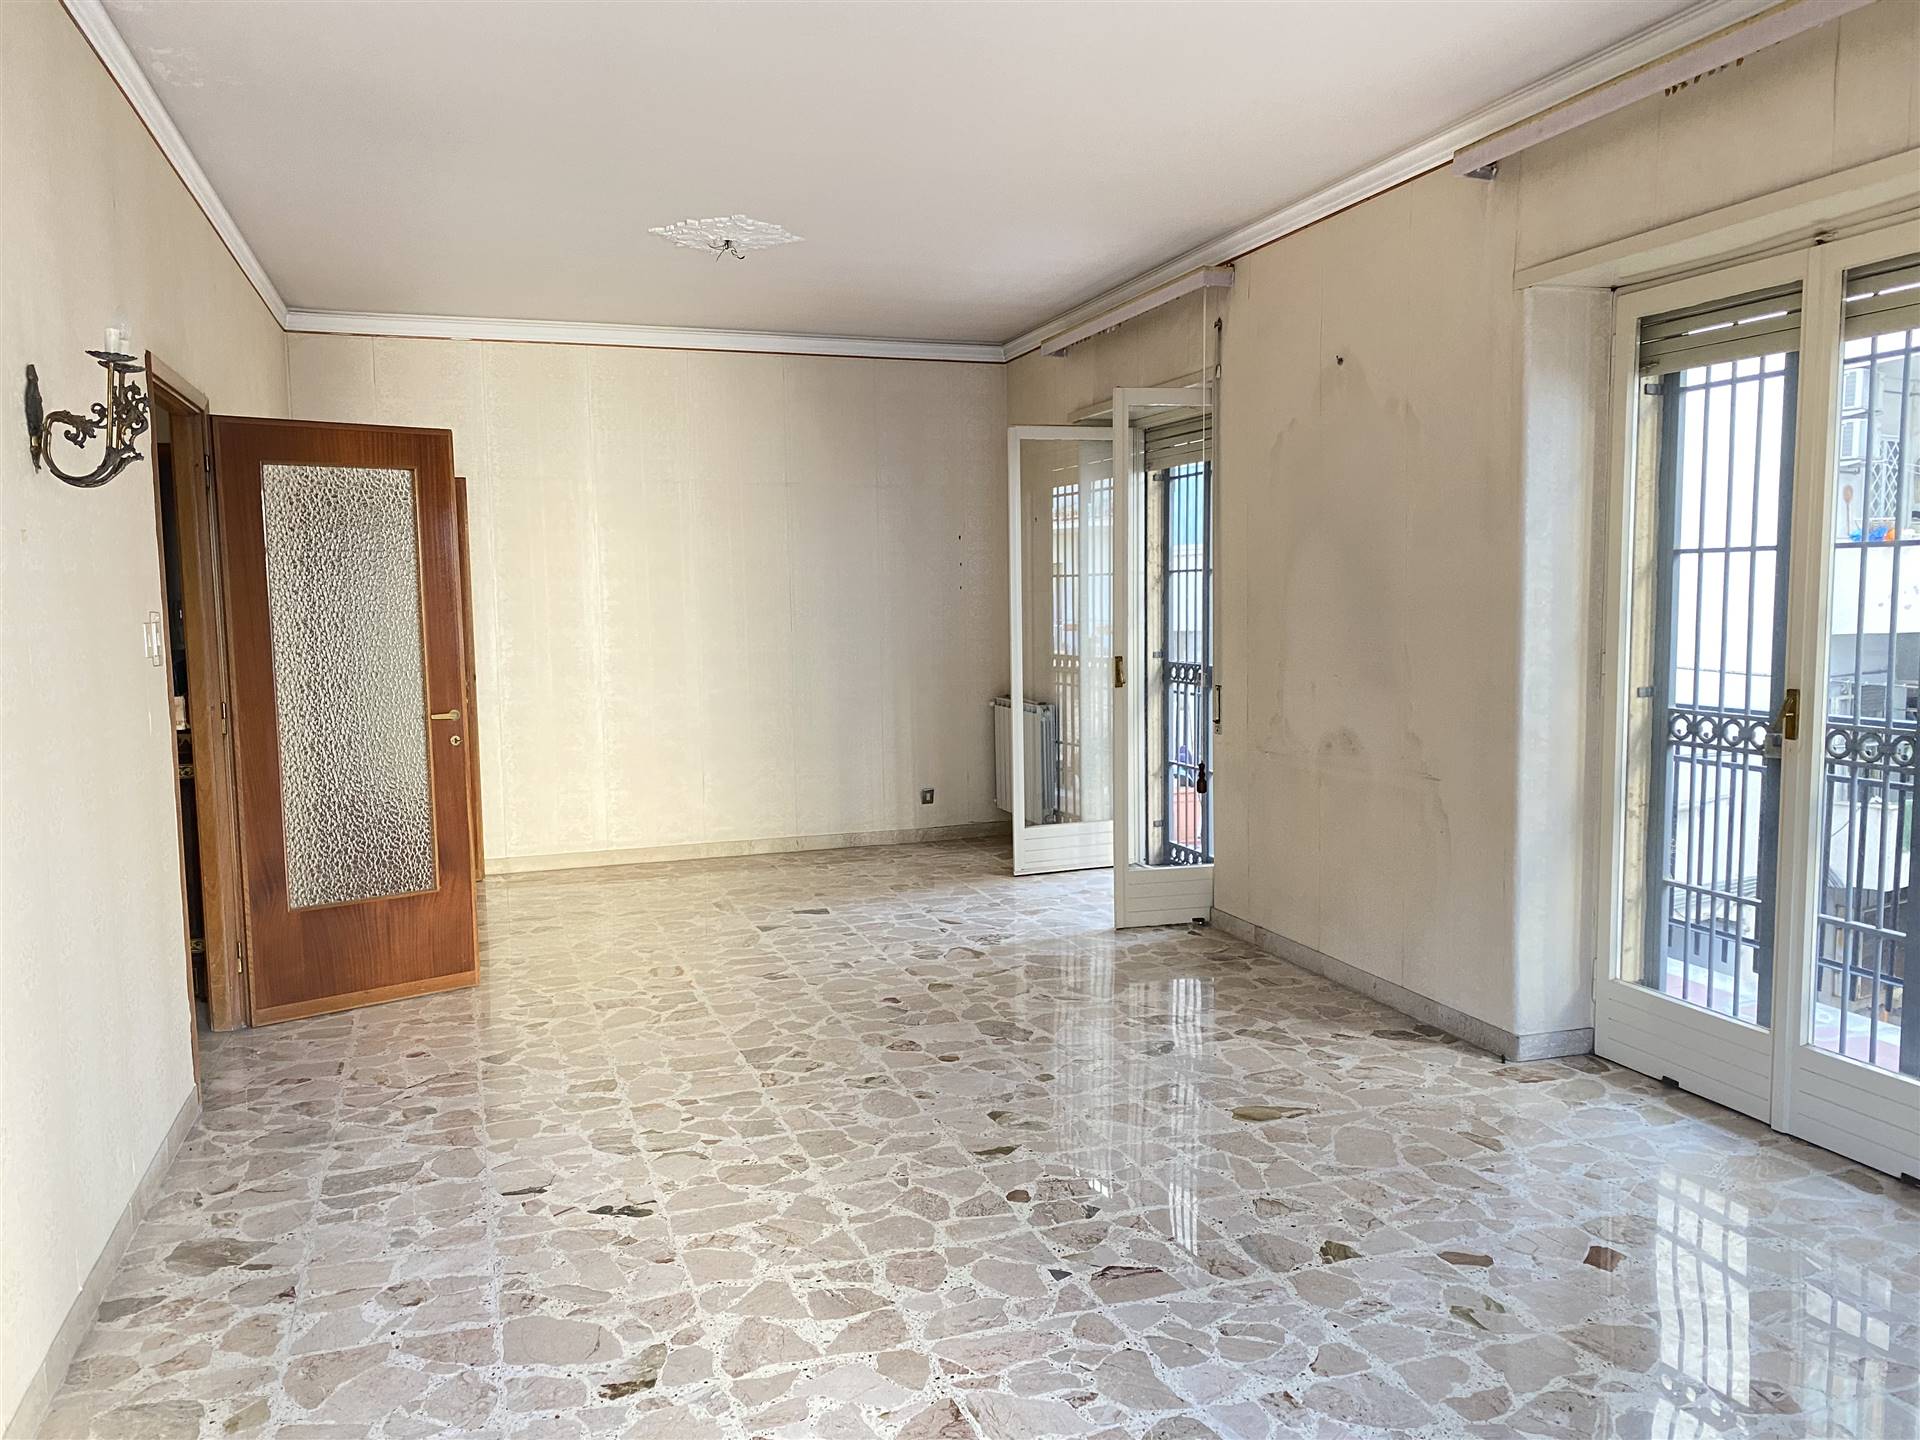 Appartamento in vendita a Catania, 6 locali, zona Località: CORSO ITALIA, prezzo € 545.000 | PortaleAgenzieImmobiliari.it